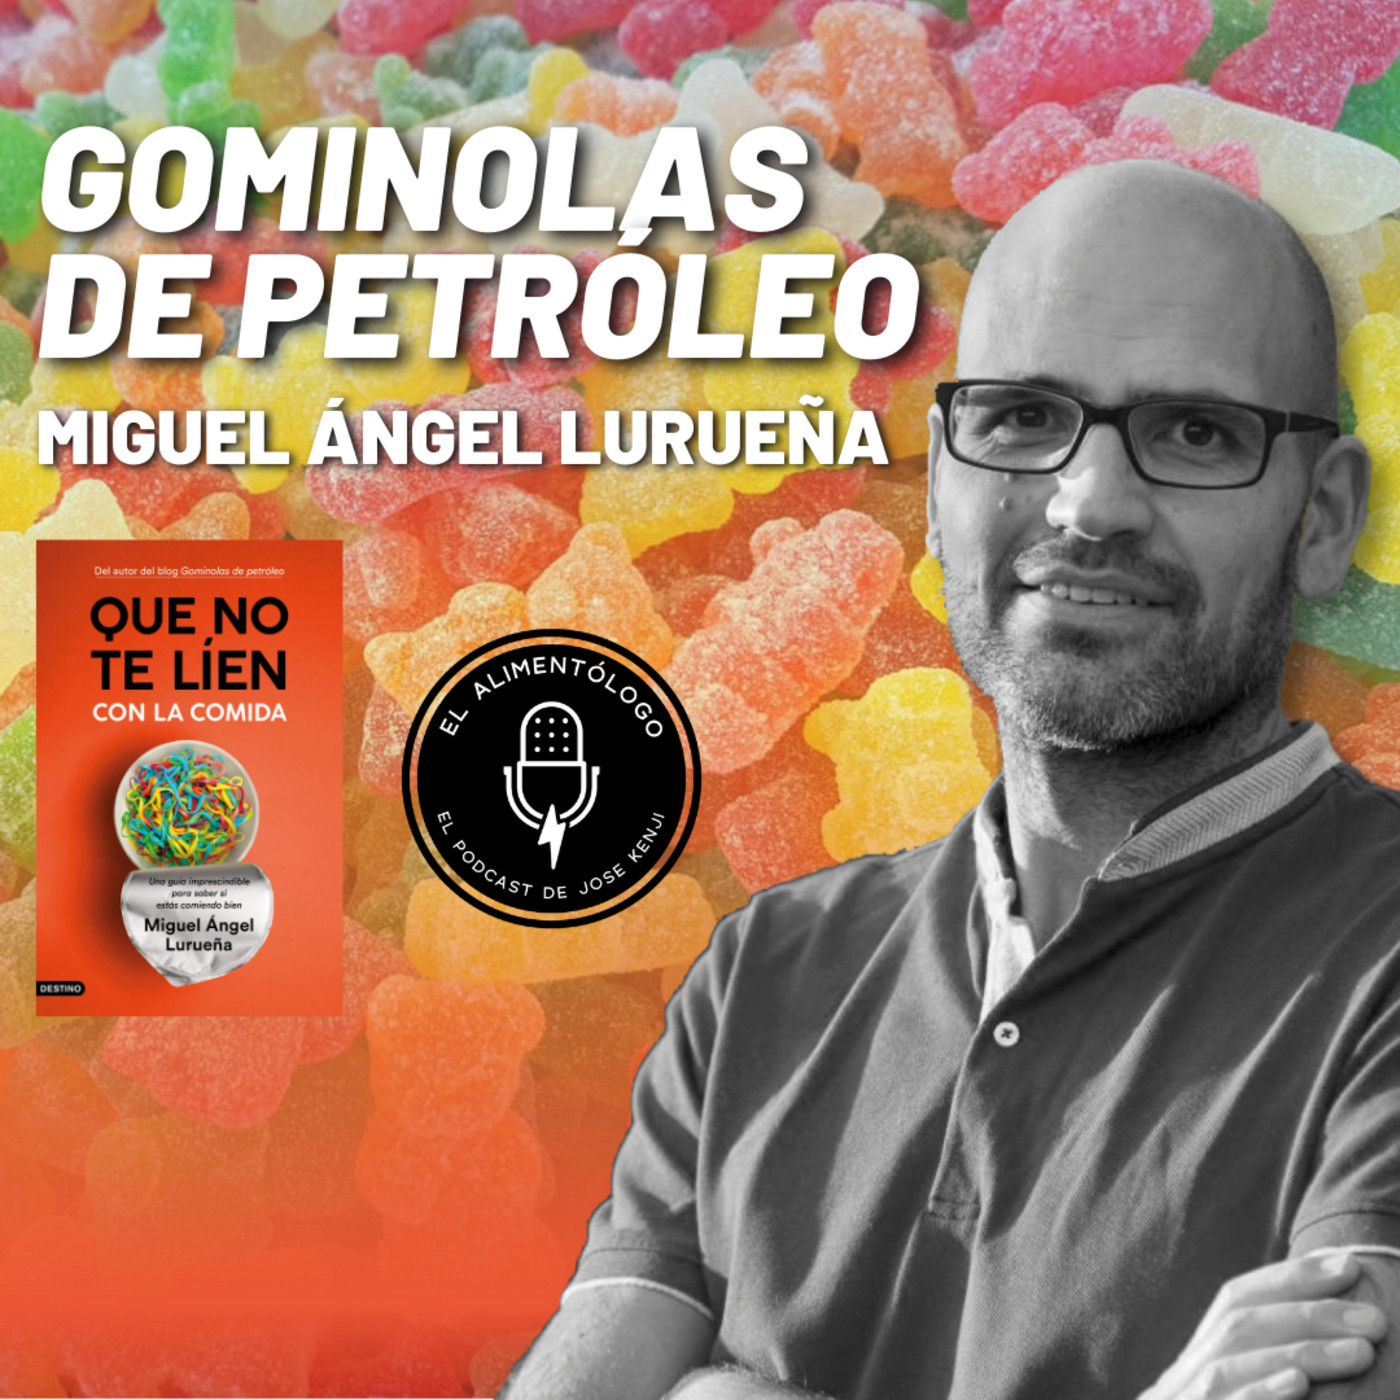 61. Miguel Ángel Lurueña (Gominolas de Petróleo) presenta 'Que no te Líen con la Comida'